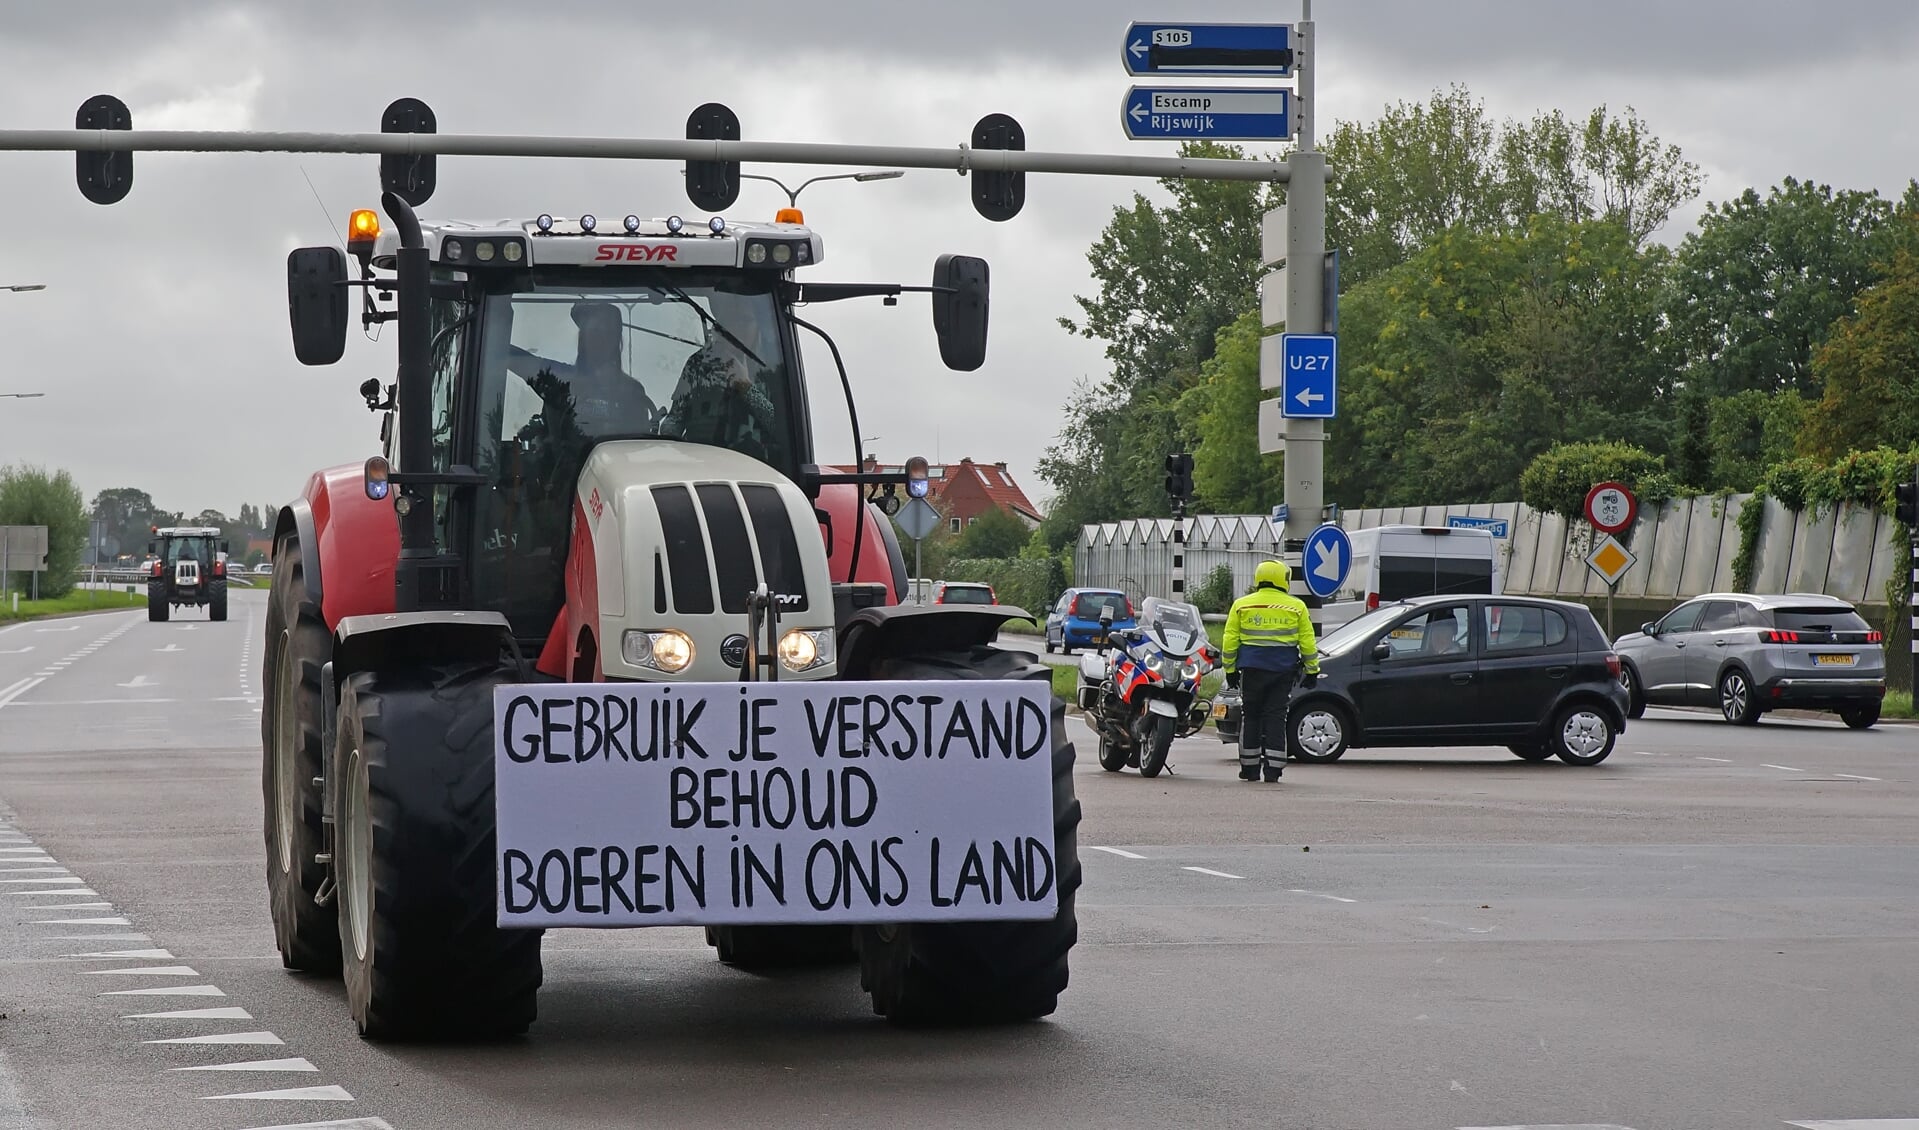 In totaal is 64 procent van het Burgerpanel voorstander van de boerenprotesten.